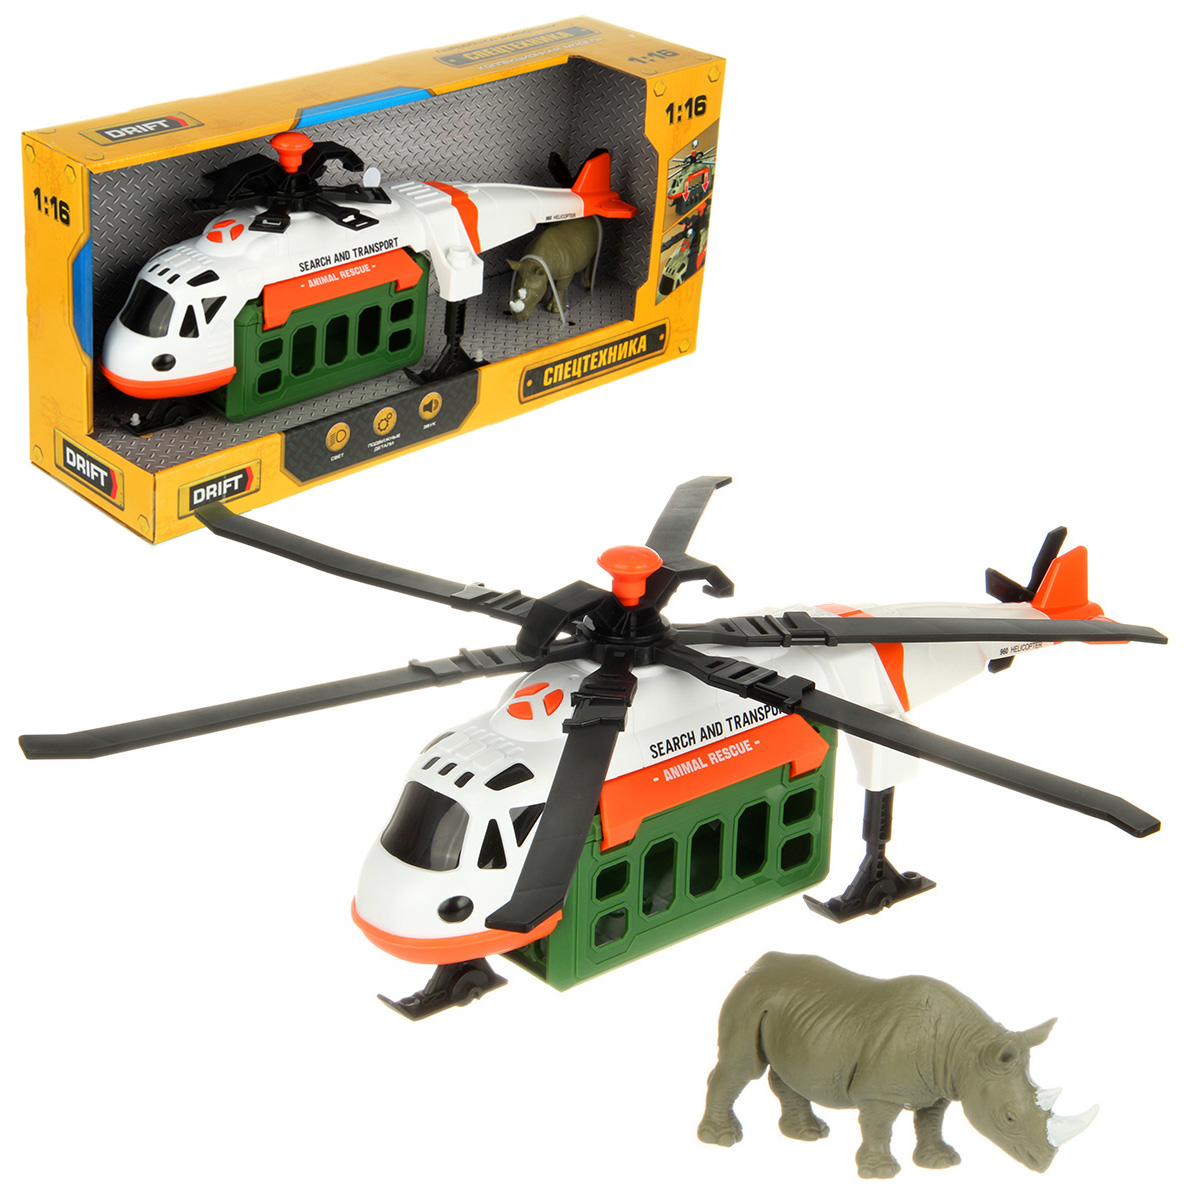 Вертолет игрушечный Drift Перевозка животных 1:16 белый 130979 drift транспортный вертолет 1 16